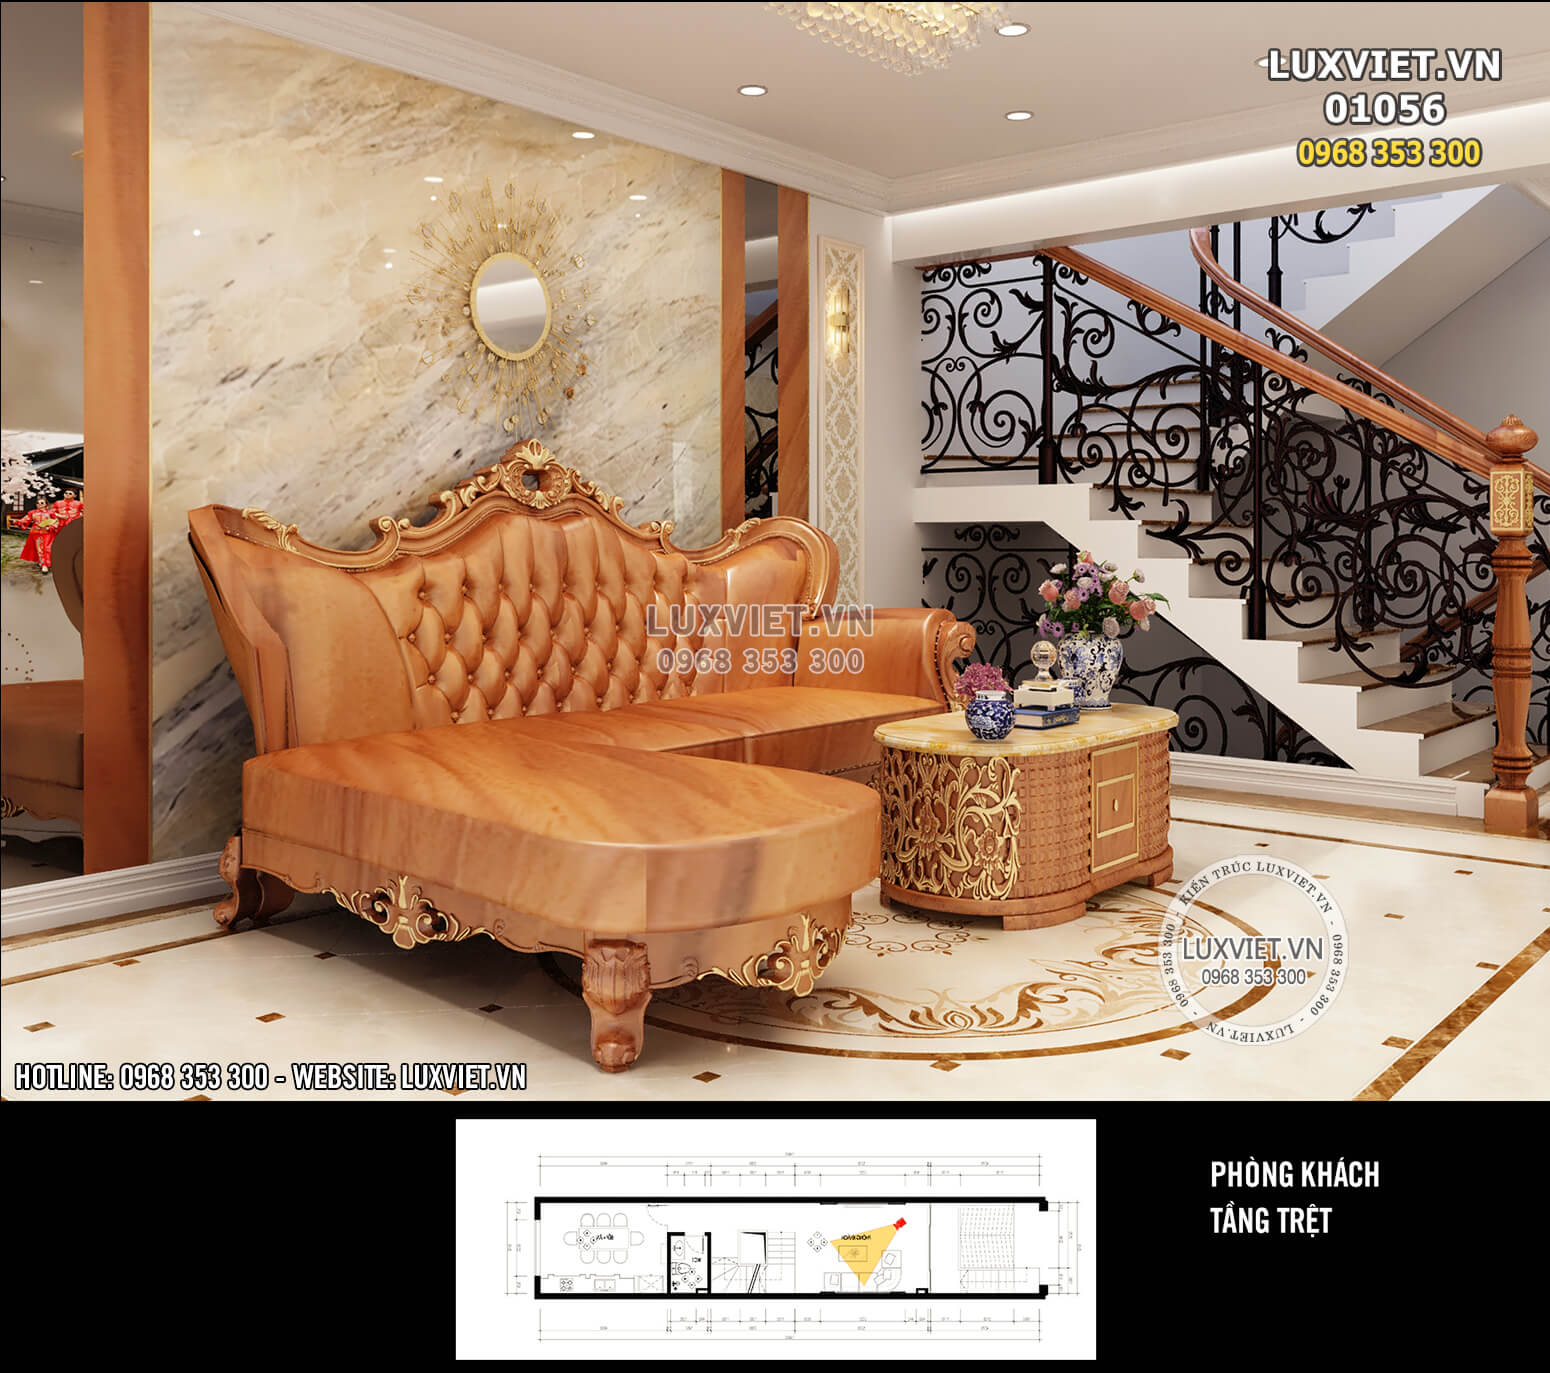 Hình ảnh: Thiết kế nội thất tân cổ điển phòng khách cho nhà ống - LV 01056